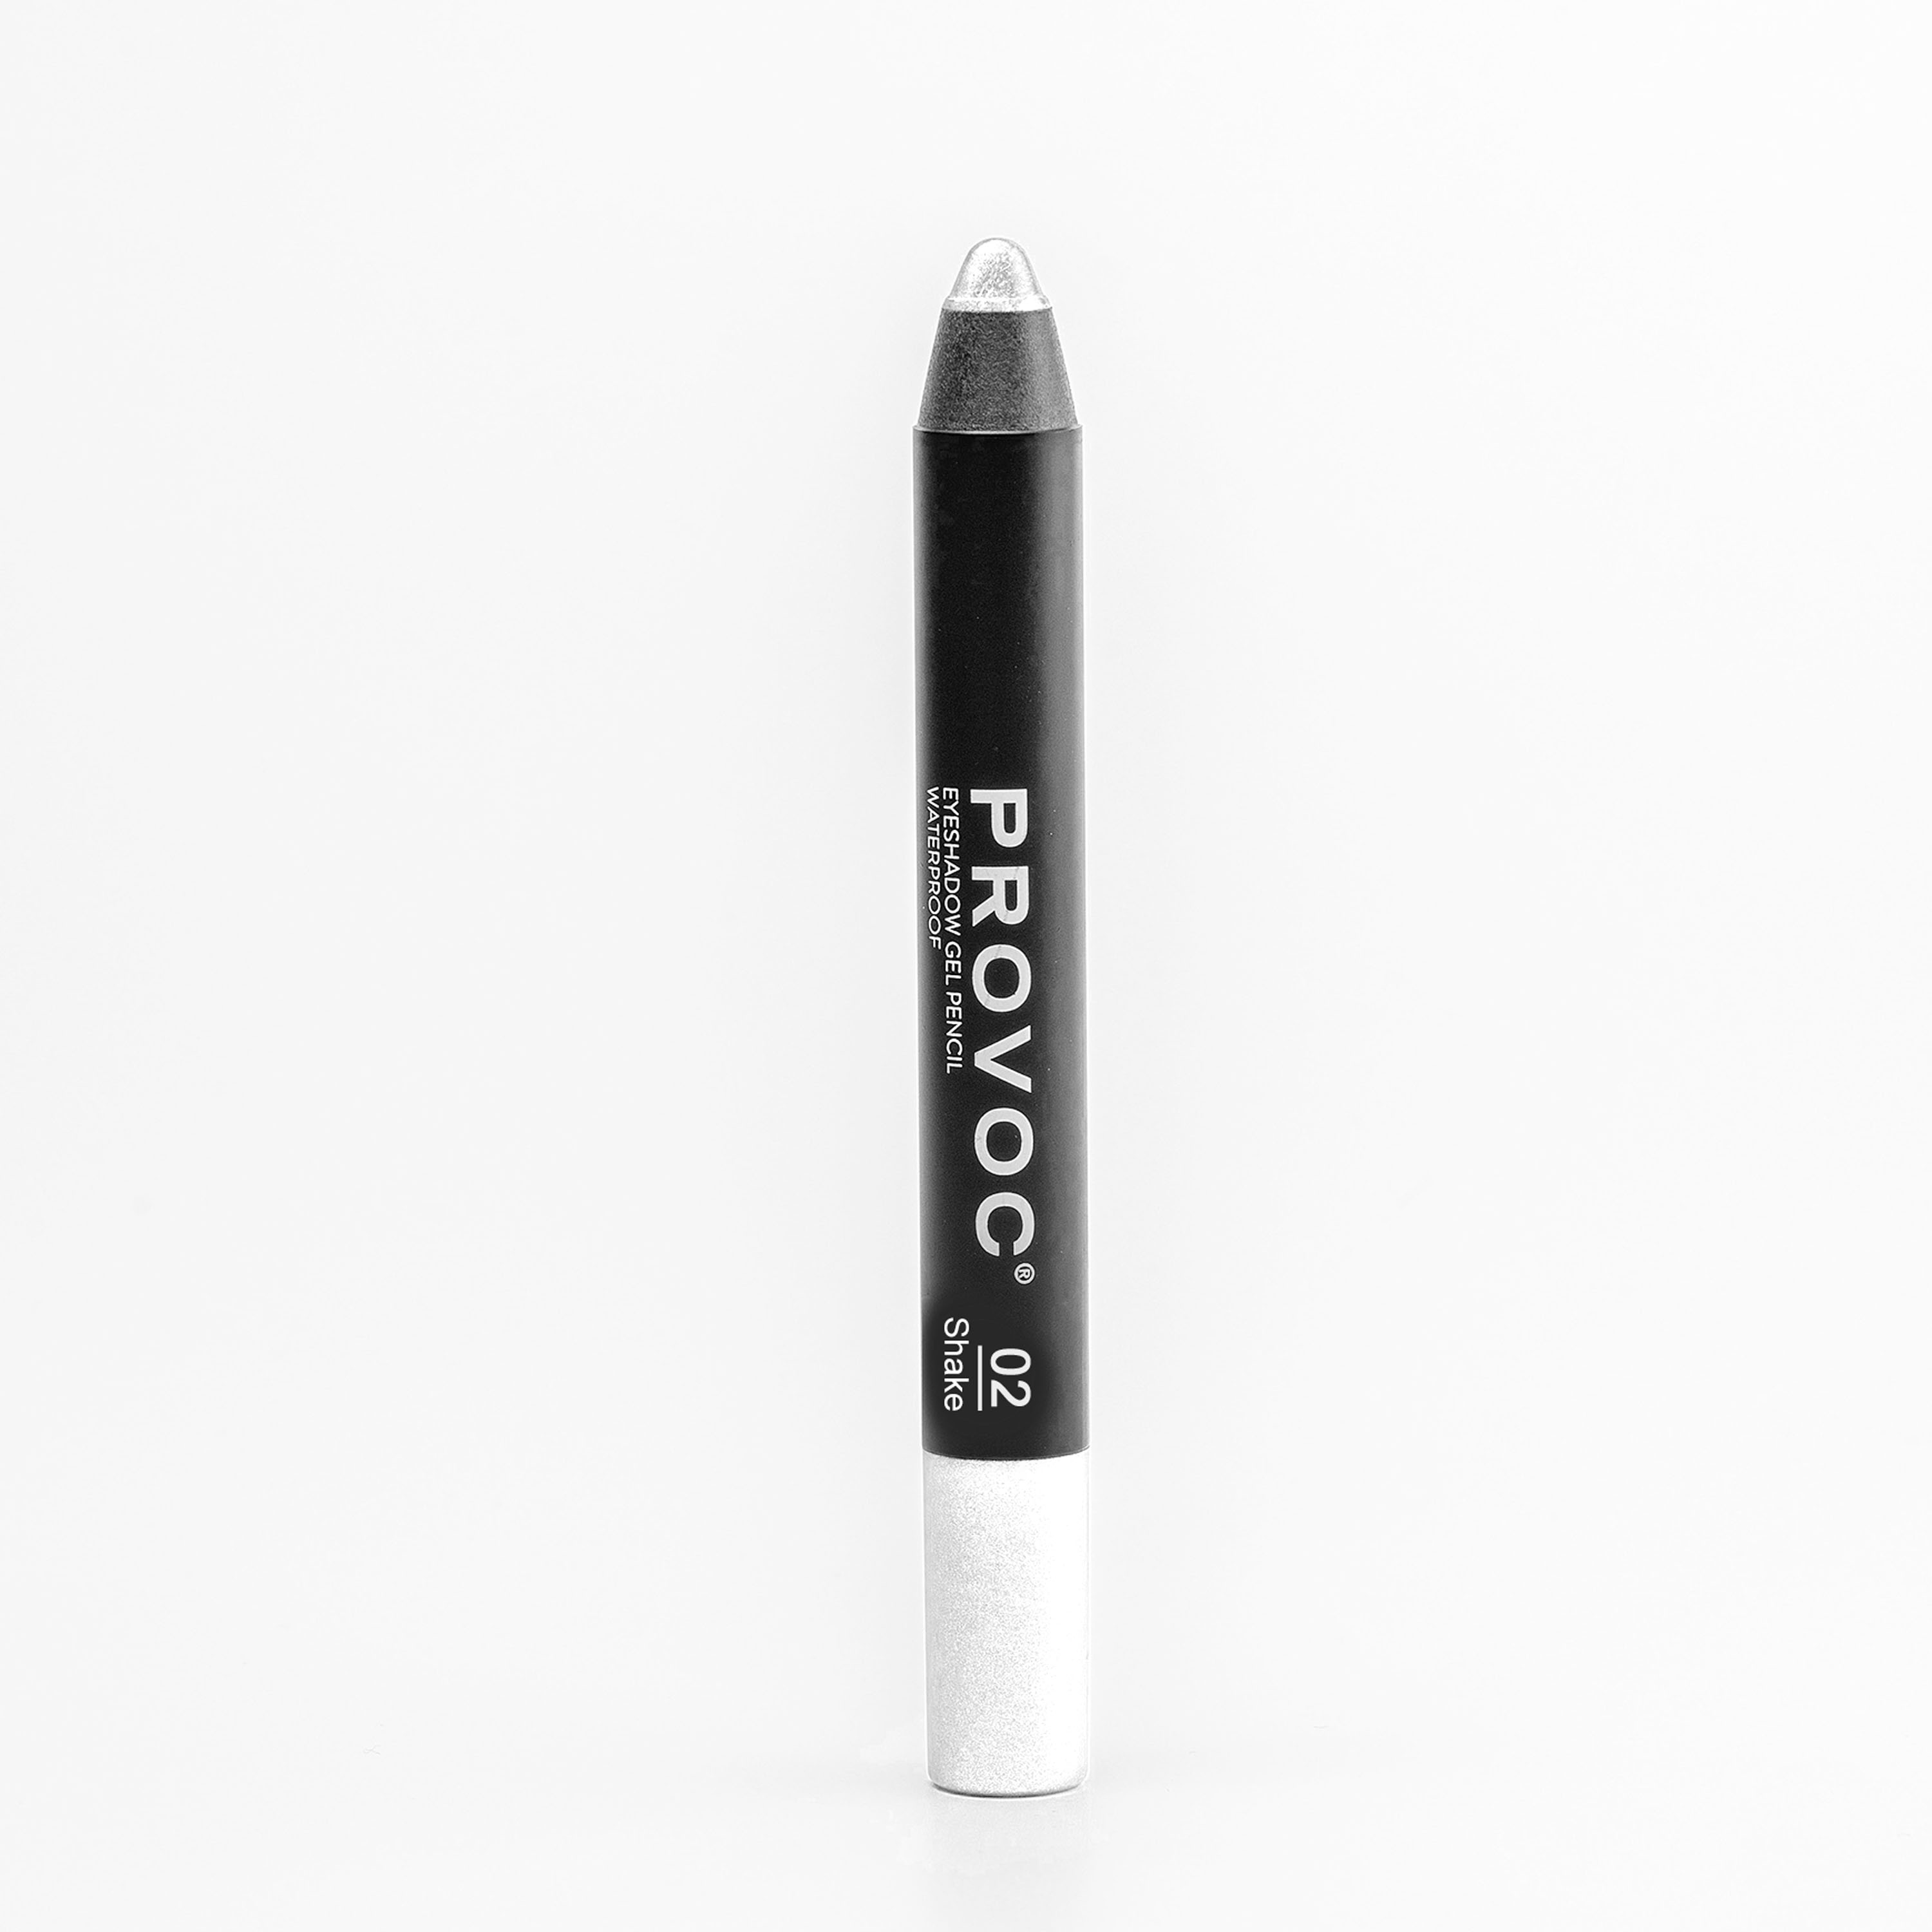 Тени для век Provoc Waterproof Eyeshadow Gel Pencil 02 Жемчужный 2,3 г тени карандаш водостойкие eyeshadow pencil pvep06 6 темный шоколад матовый 1 шт